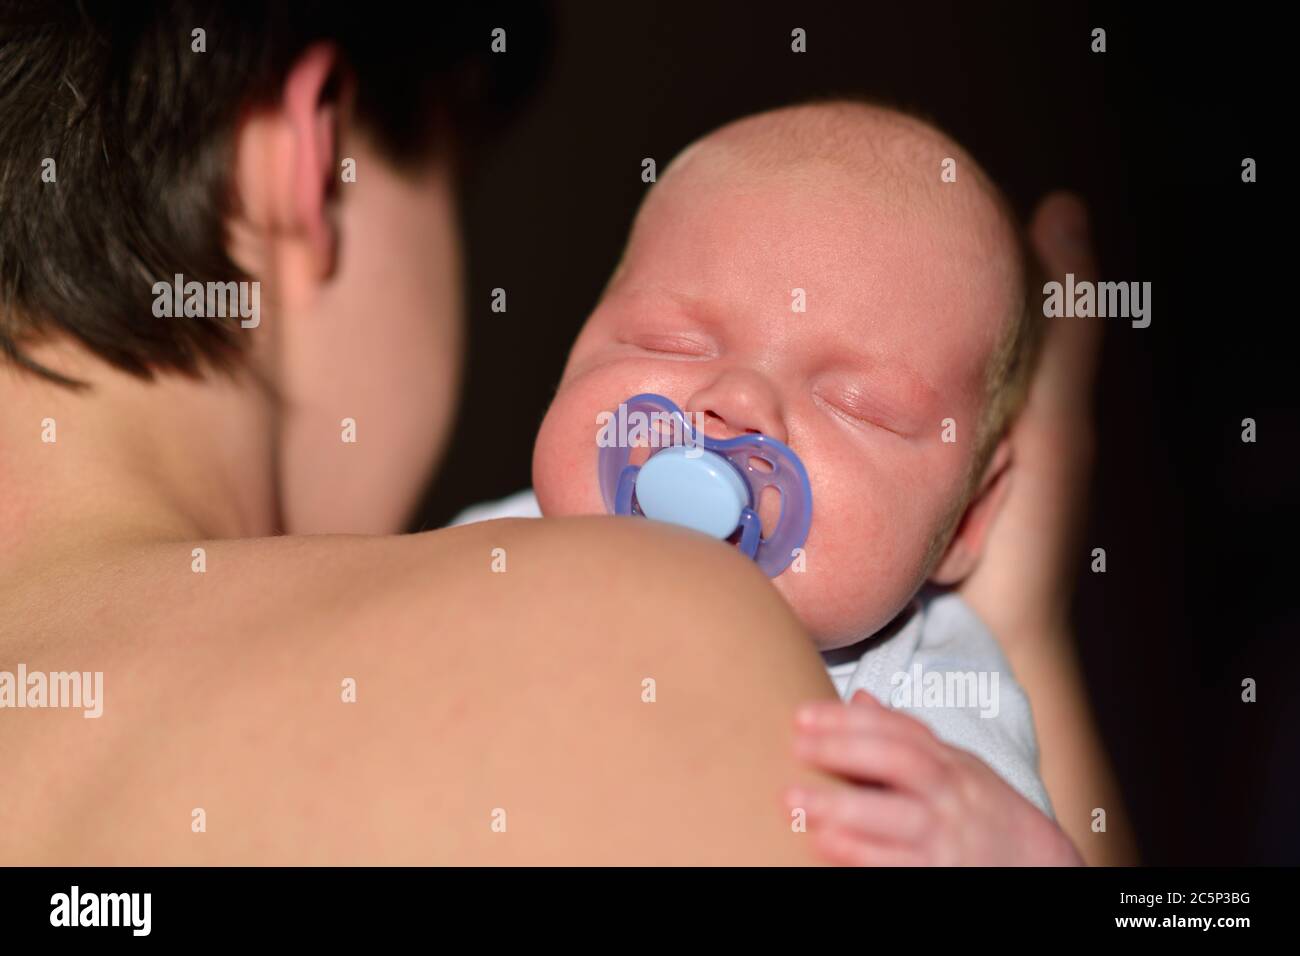 Bébé nouveau-né sur les mains des pères Banque D'Images